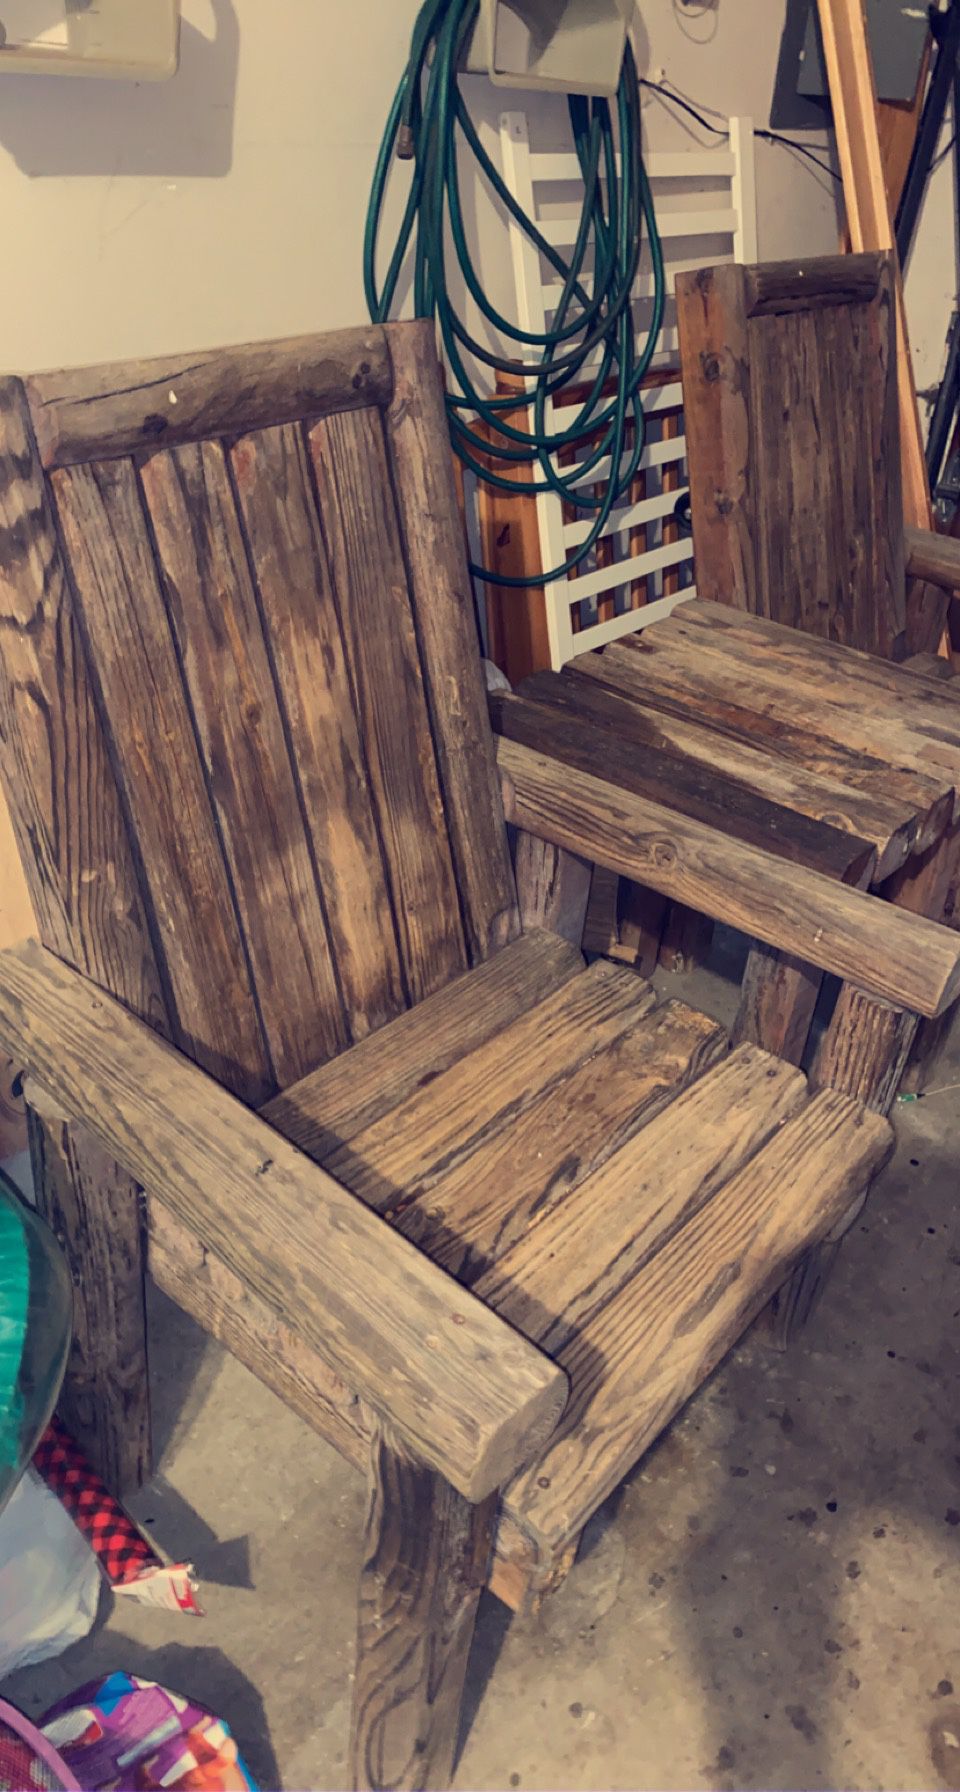 Handmade wooden outdoor patio furniture